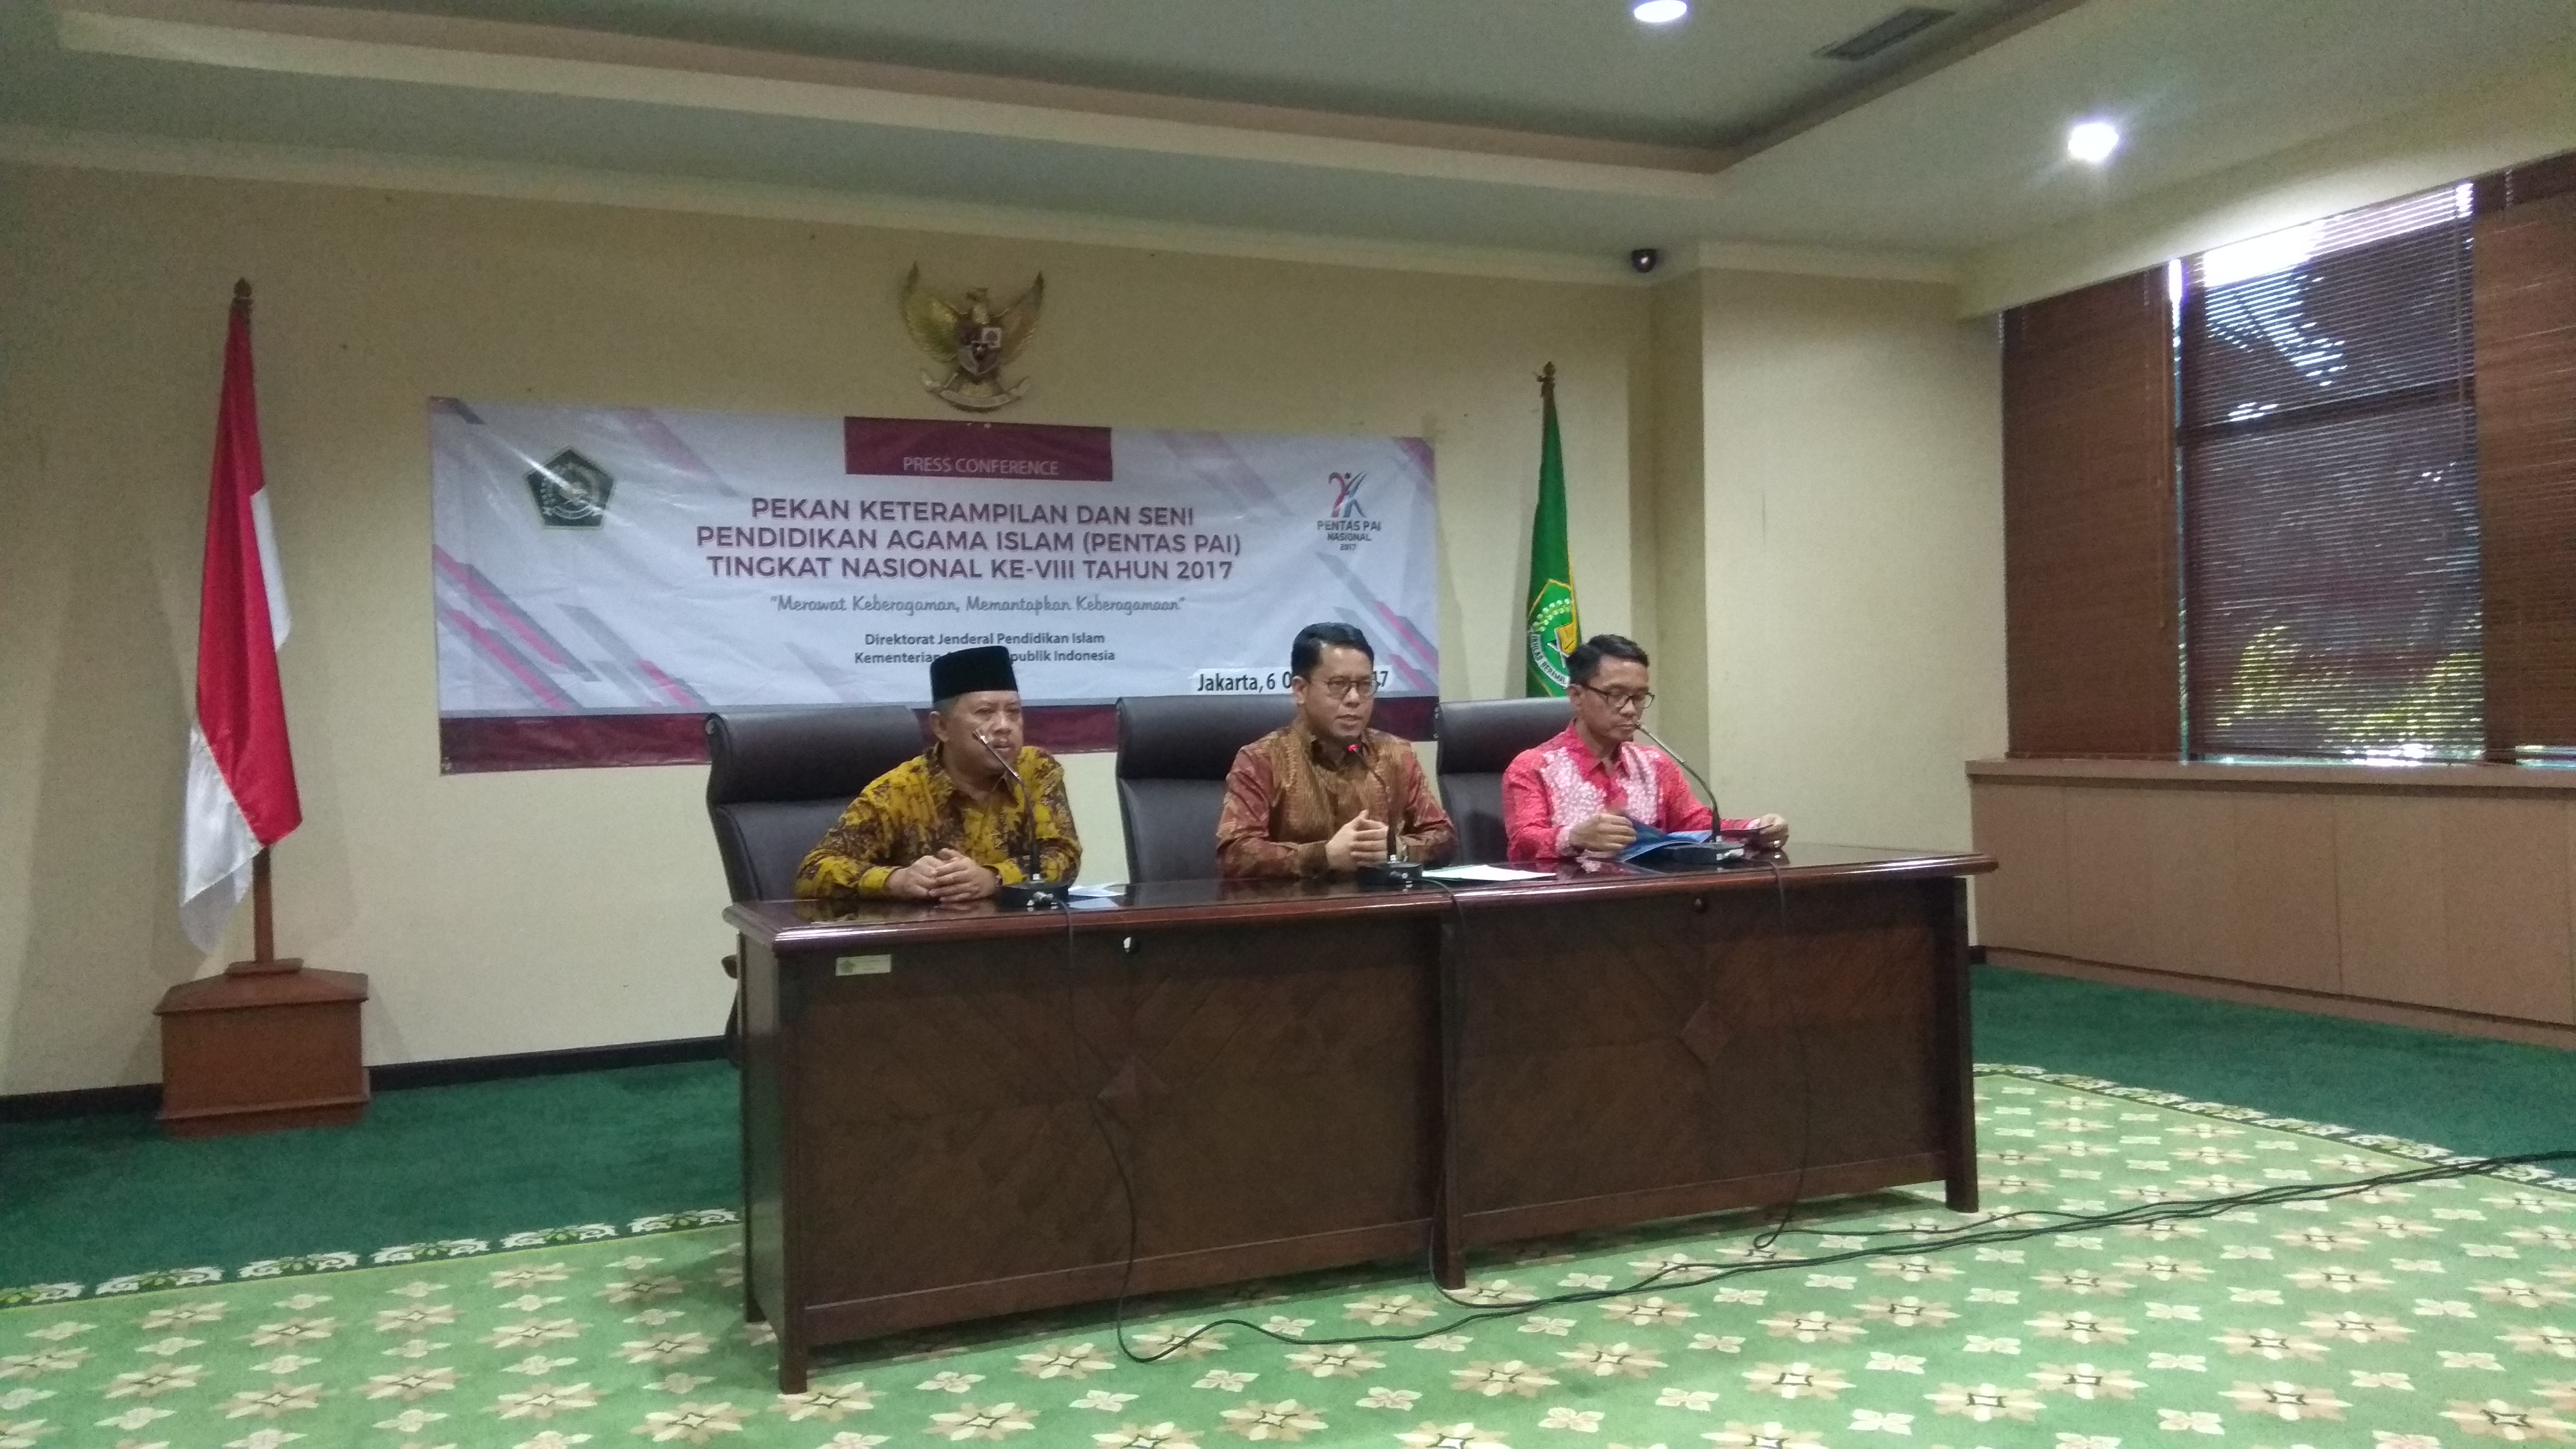 Pentas Pendidikan Islam Nasional Di Aceh 9-14 Oktober Mendatang